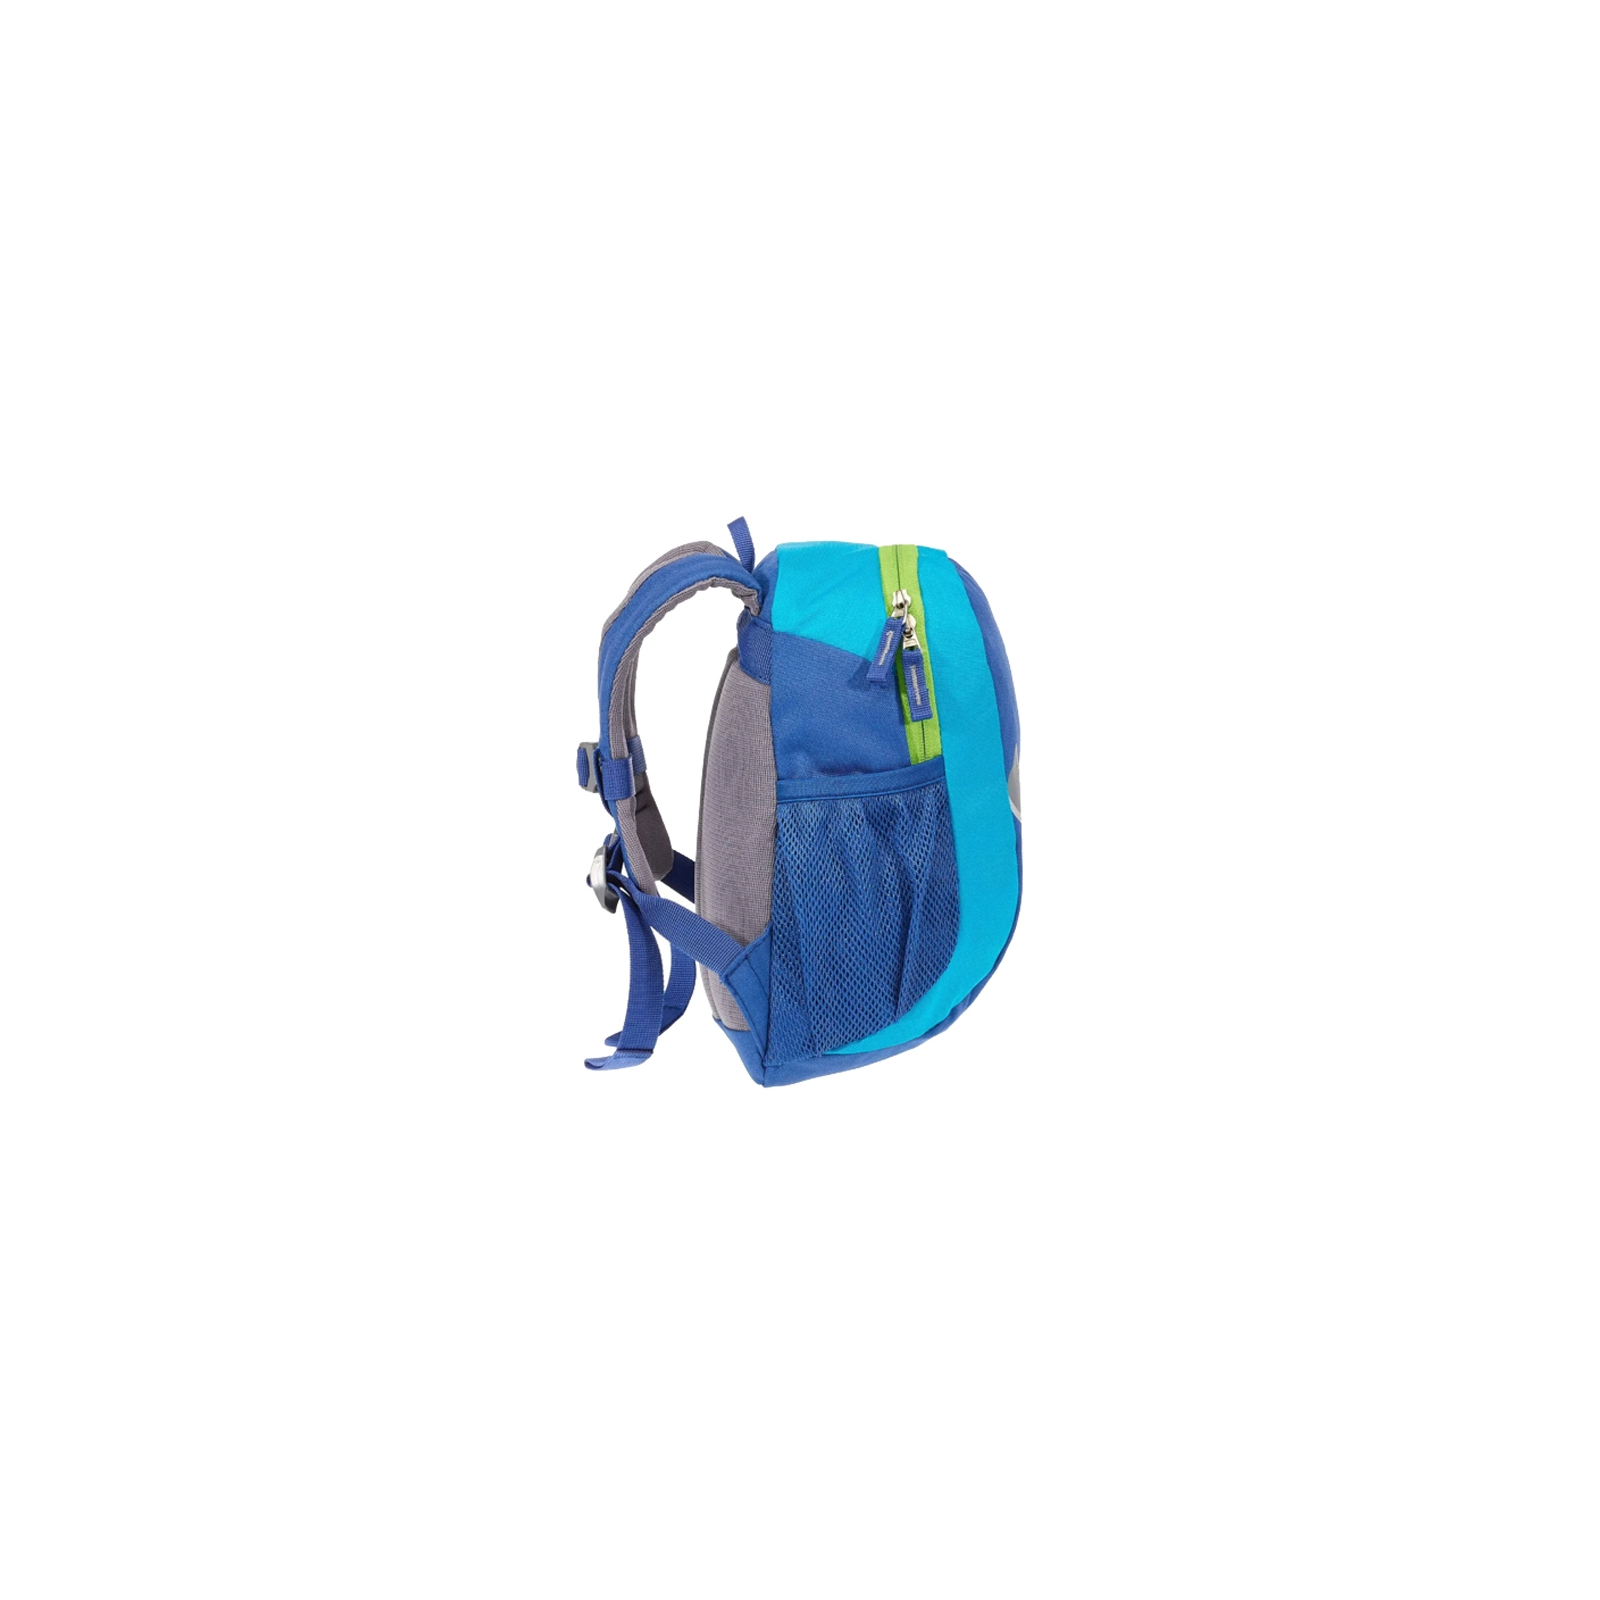 Рюкзак шкільний Deuter Pico 3391 indigo-turquoise (36043 3391) зображення 5